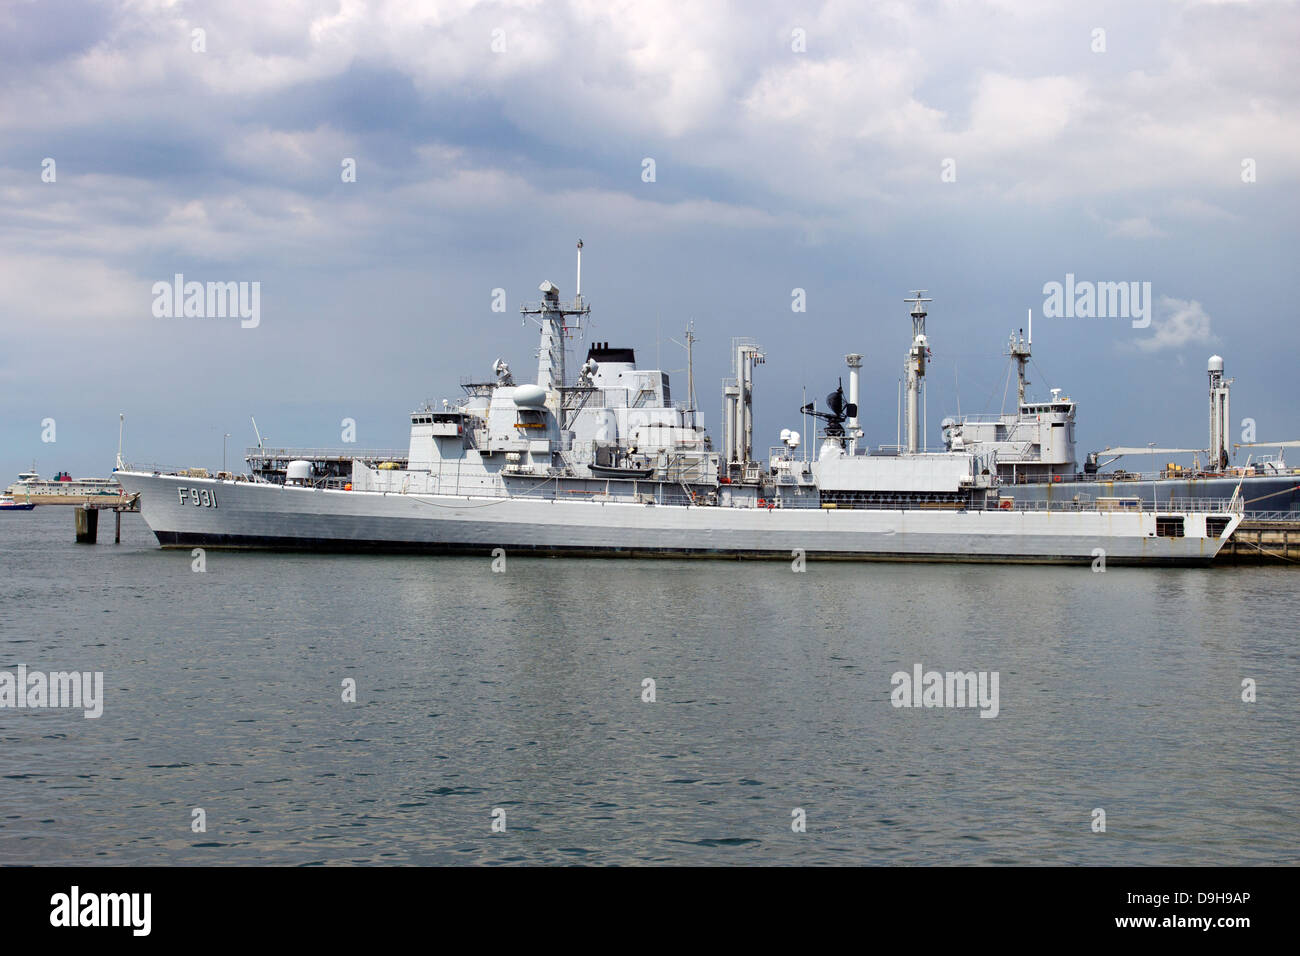 Royal Netherlands Navy frigate Stock Photo